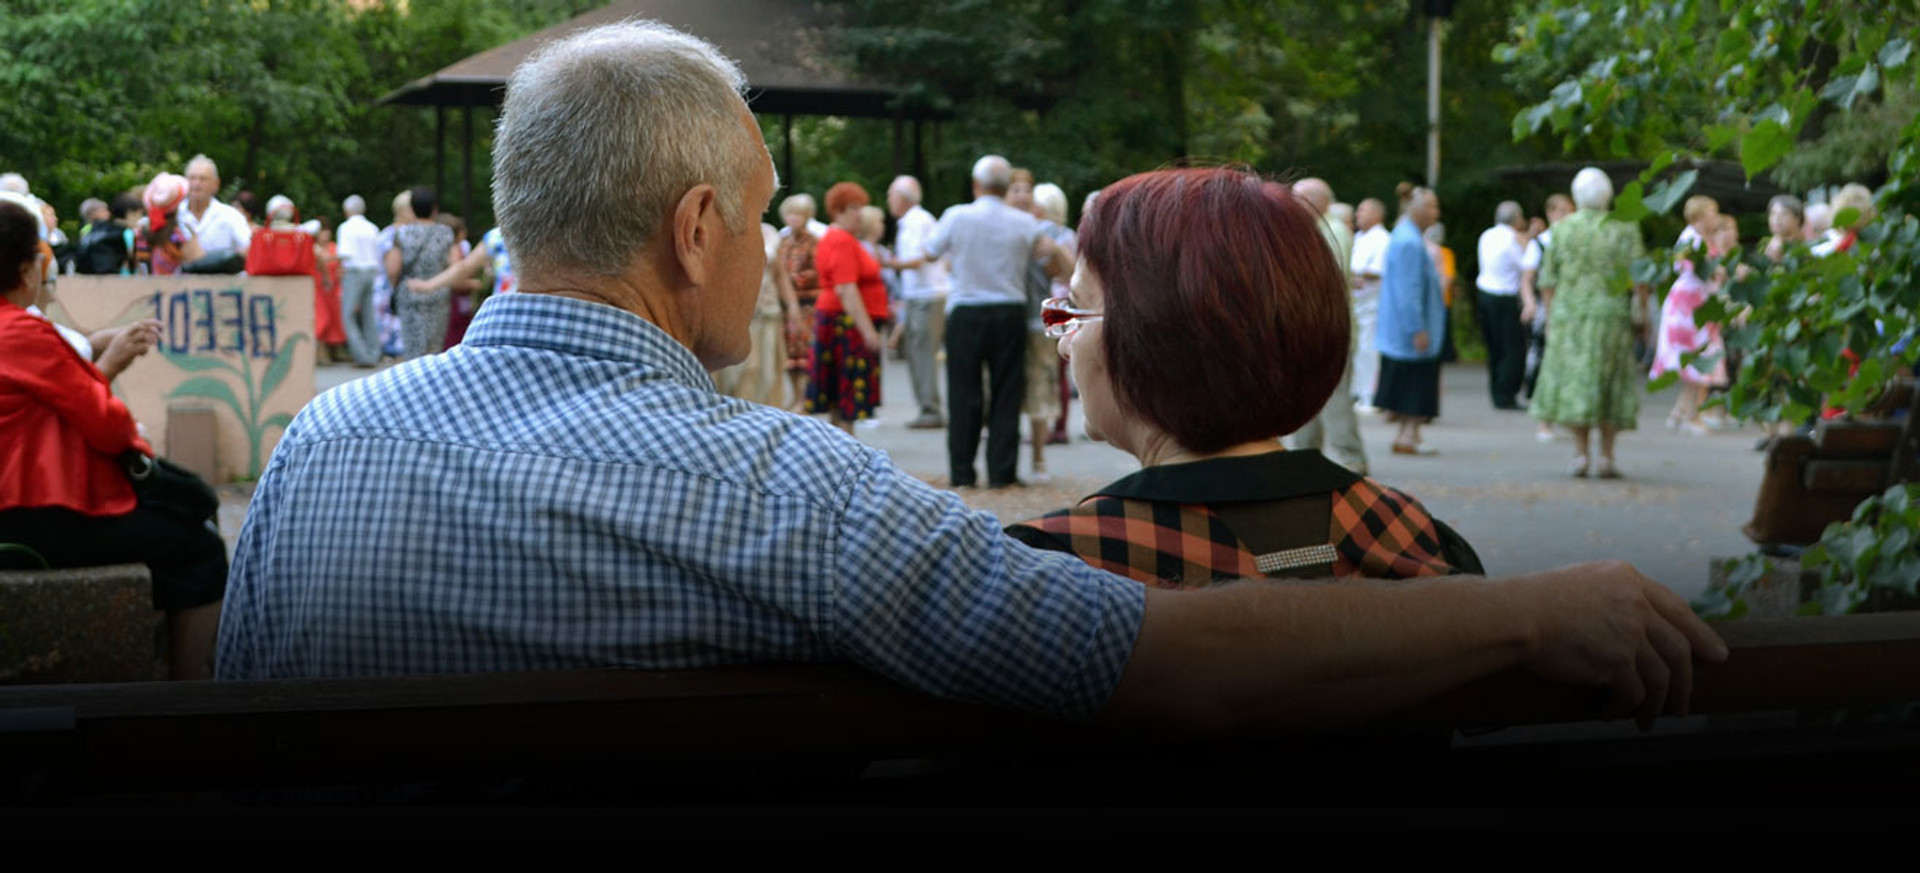 “Давно померла б, якби не танцювала”: як пенсіонери на Гідропарку знайшли час на себе